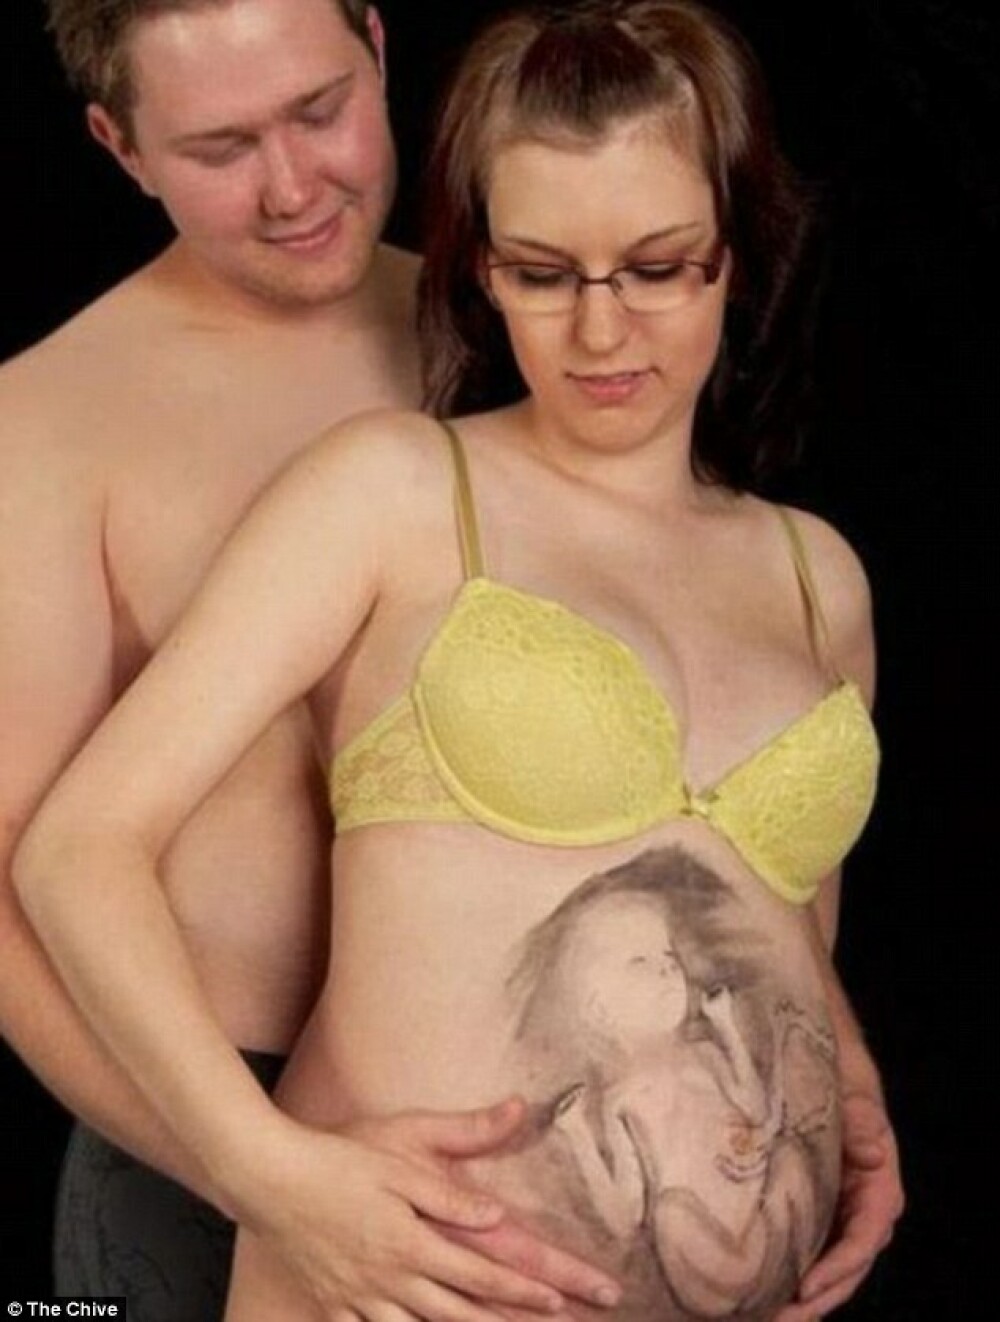 Imaginile din timpul sarcinii pe care parintii nu le pot arata niciodata copiilor. GALERIE FOTO - Imaginea 4